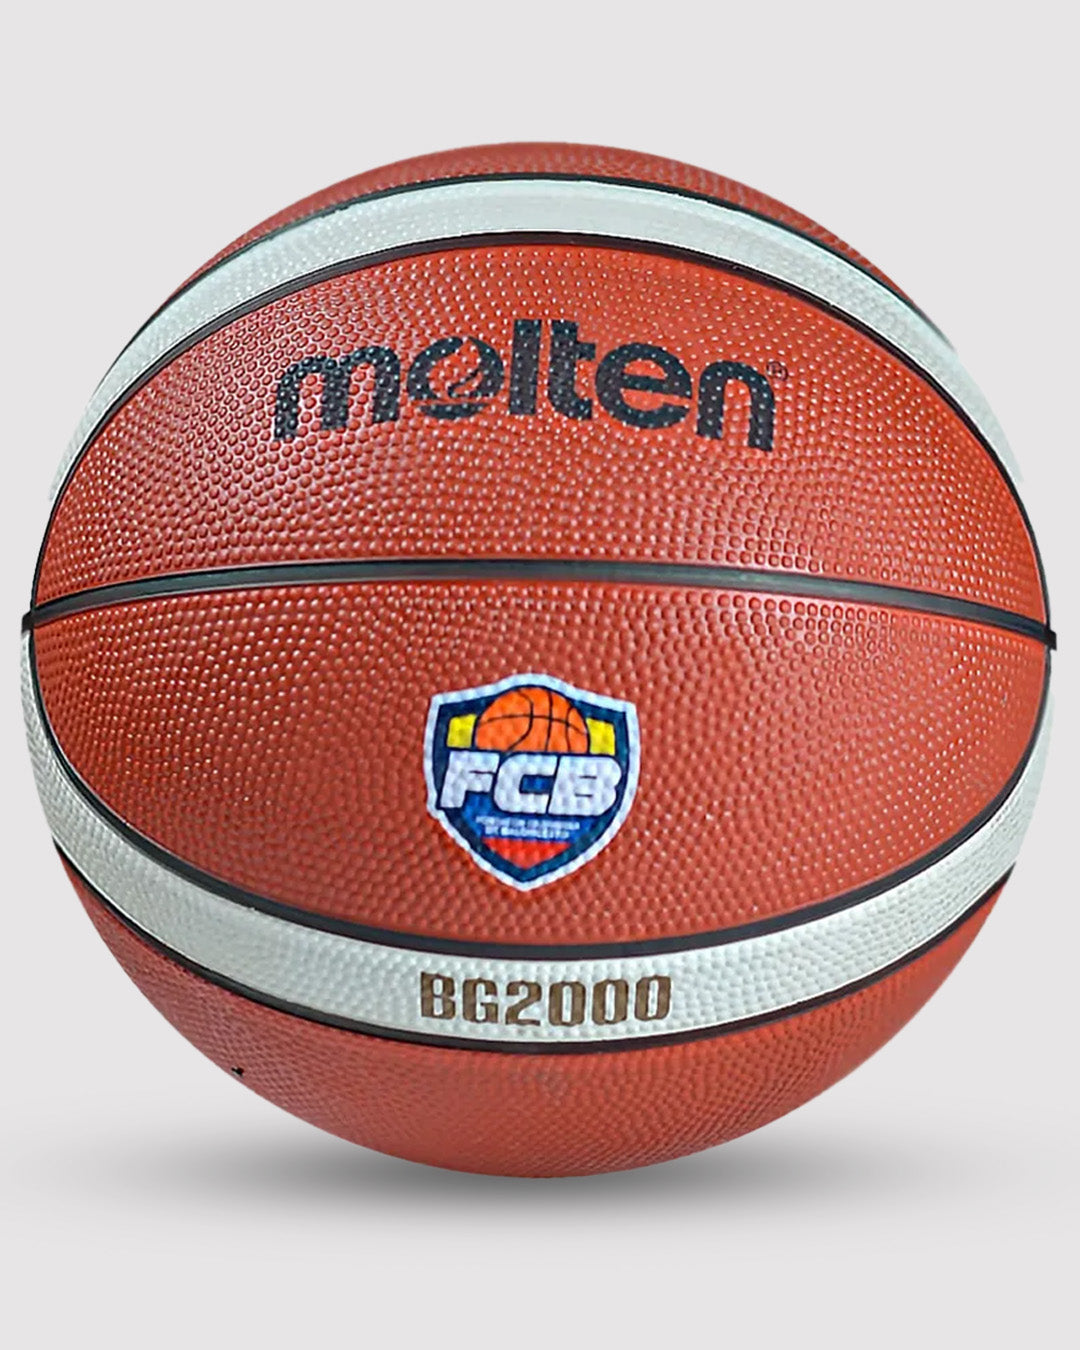 Balón Molten Baloncesto Unisex